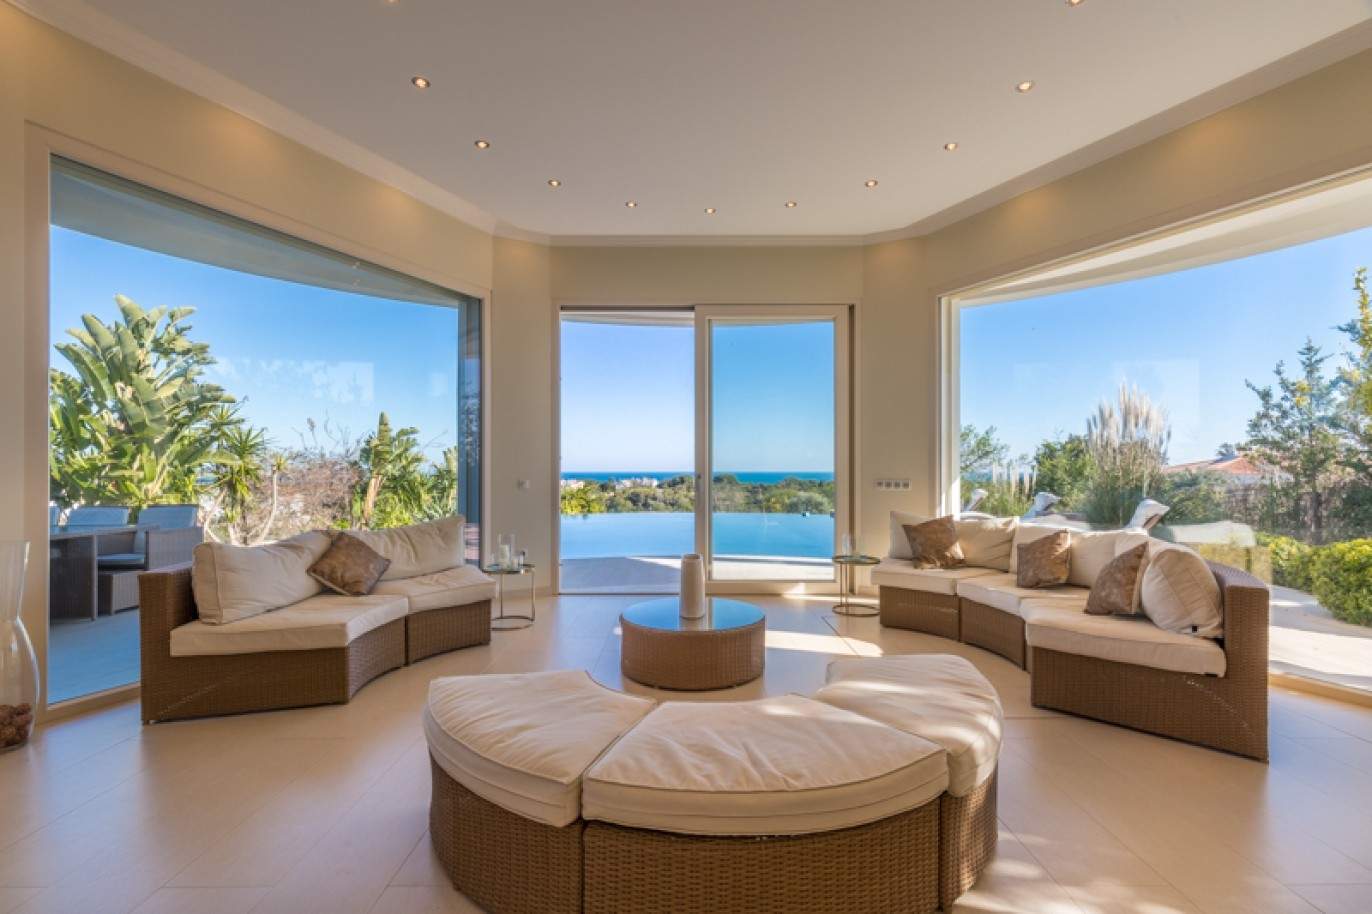 Freistehende villa zum Verkauf mit Meerblick, in der Nähe von Strand und golf, Carvoeiro, Algarve, Portugal_76407